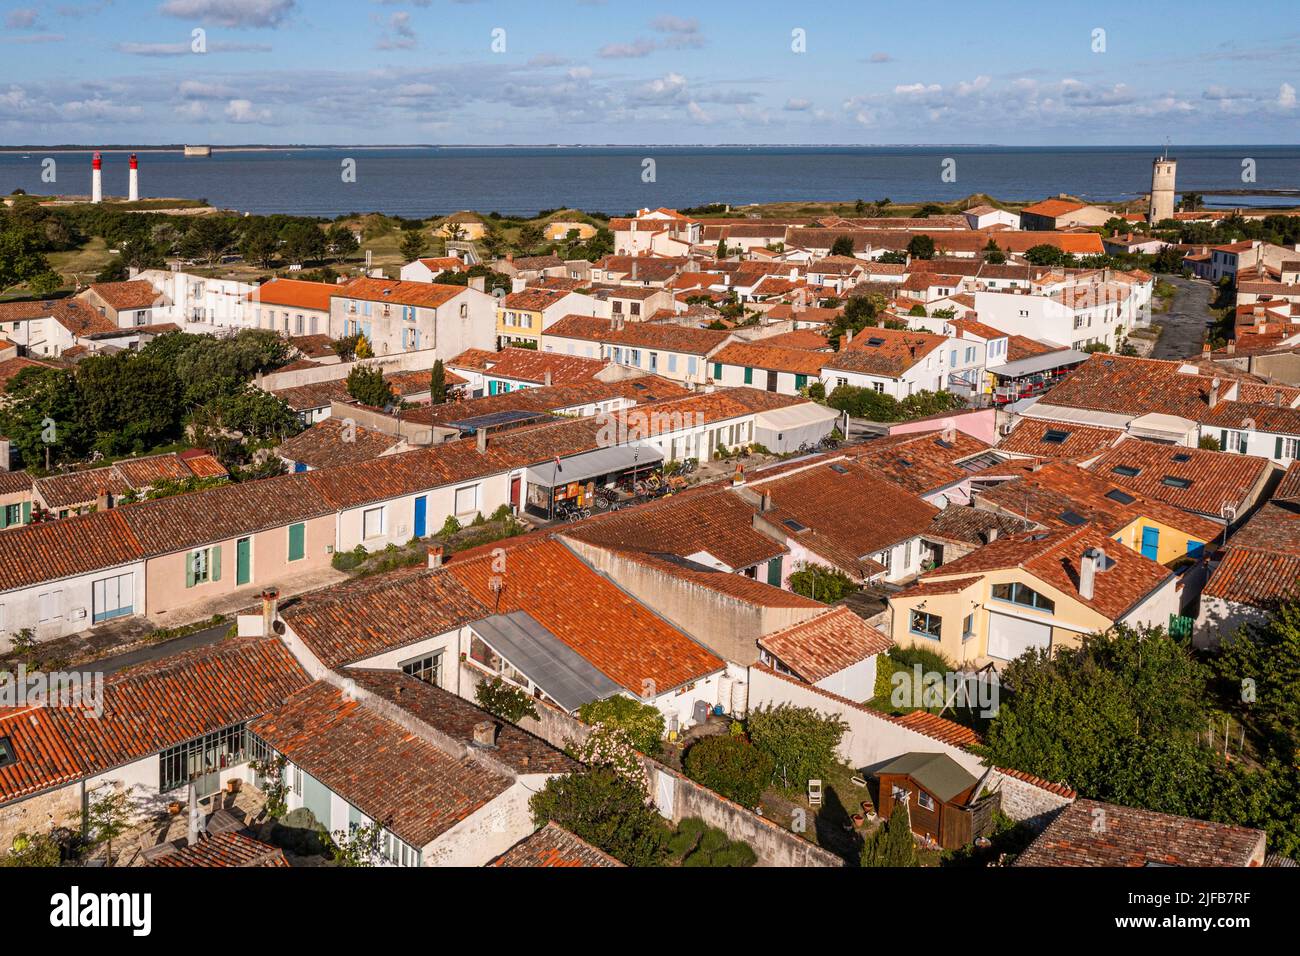 France, Charente-Maritime, Ile d'Aix (Ile d'Aix), village, maisons de pêcheurs anciennes dans la rue Marengo, fort Boyard en arrière-plan (vue aérienne) Banque D'Images